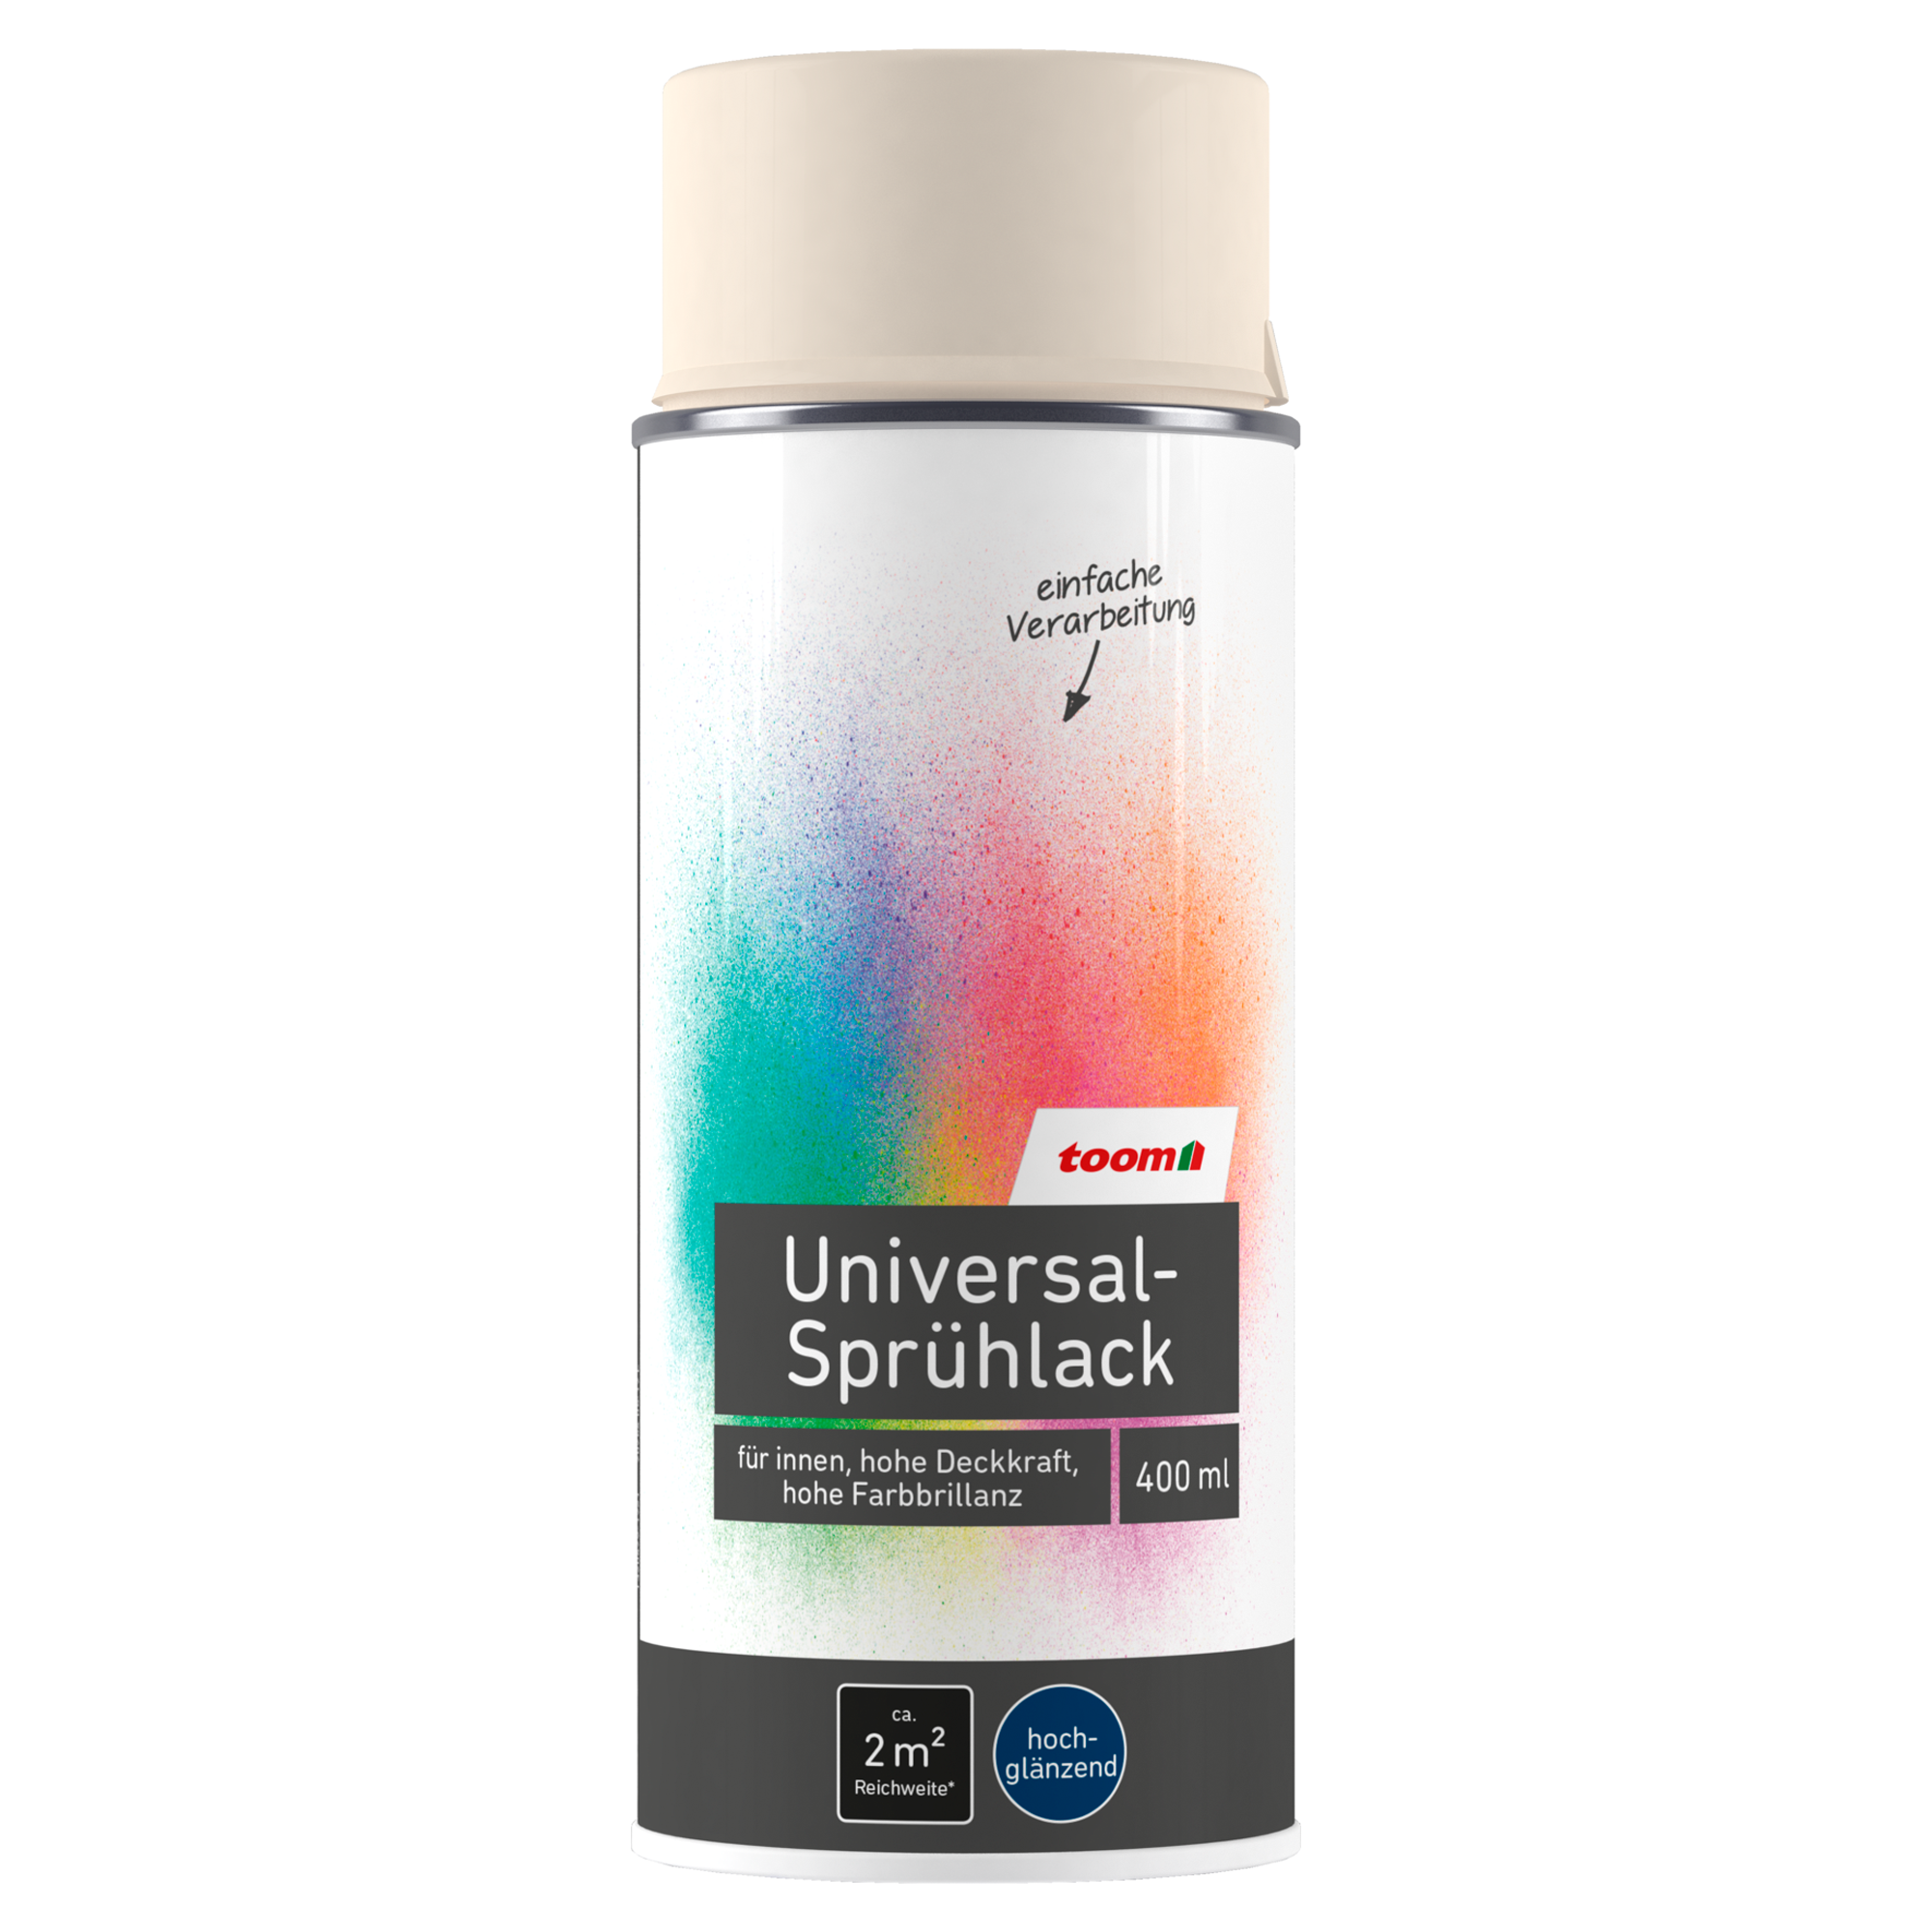 Universal-Sprühlack 'Bergkristall' cremeweiß glänzend 400 ml + product picture